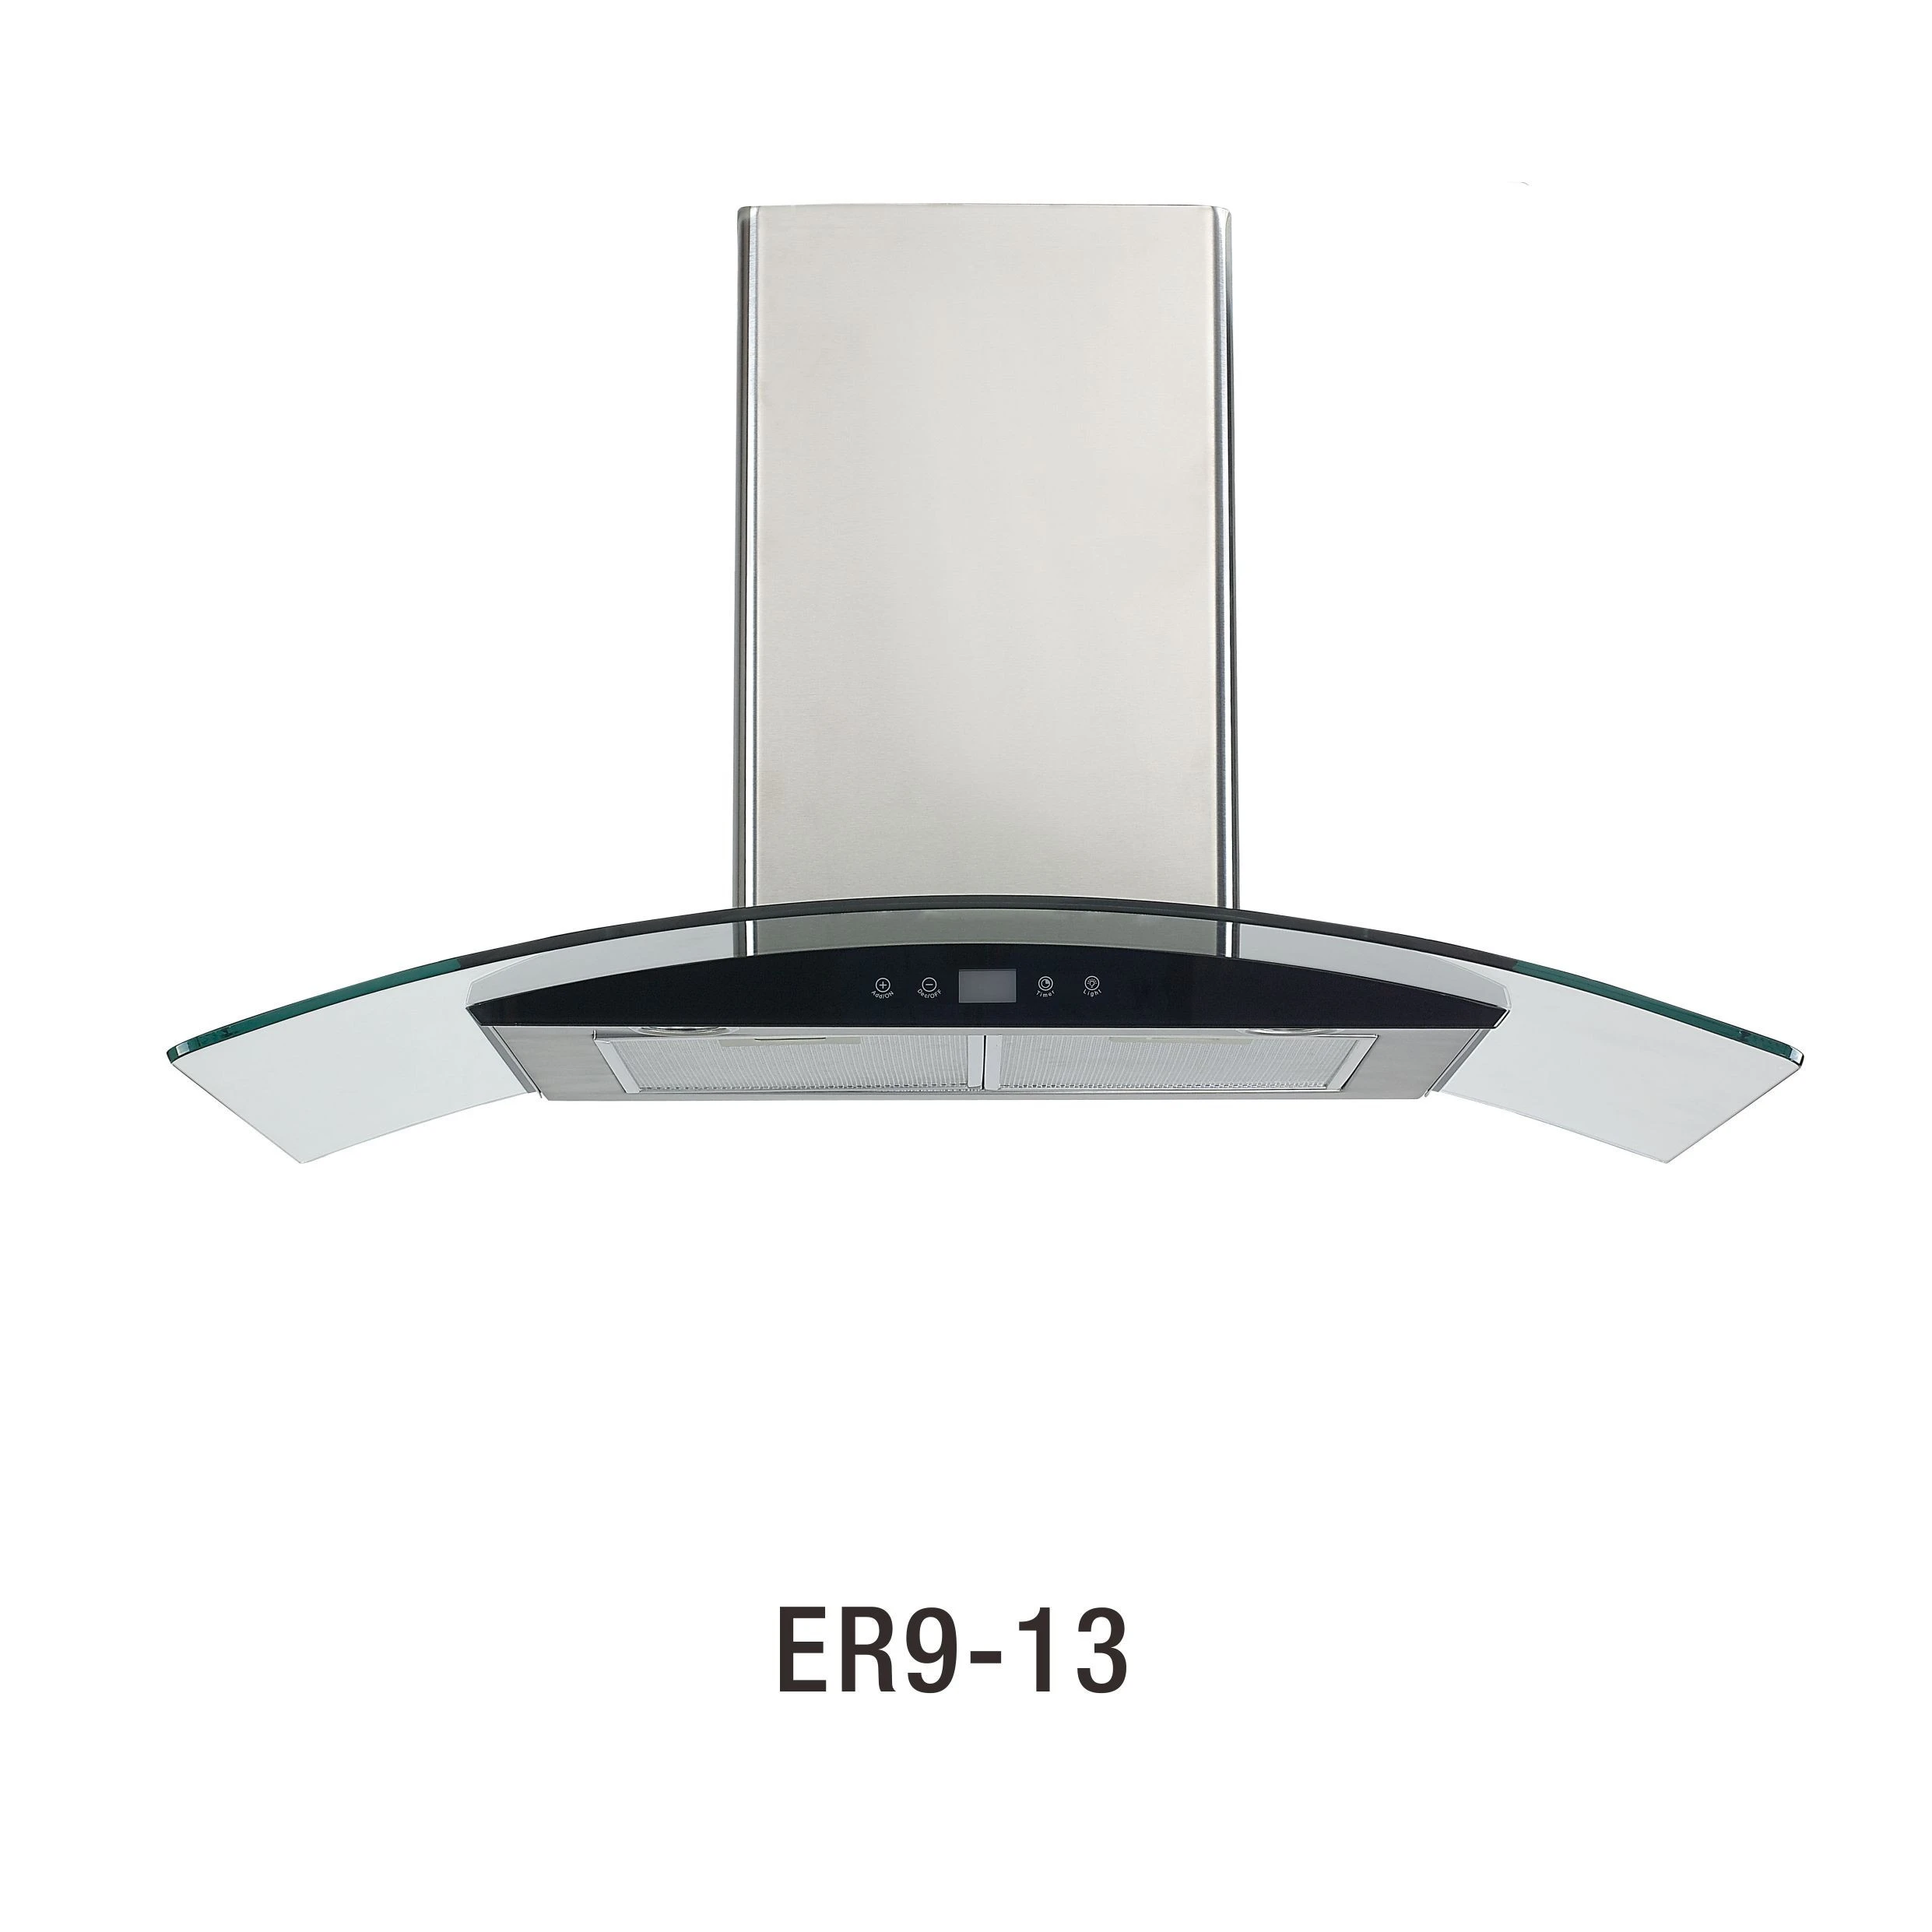 ER9-13 kitchen vent pipe range hoods smeg